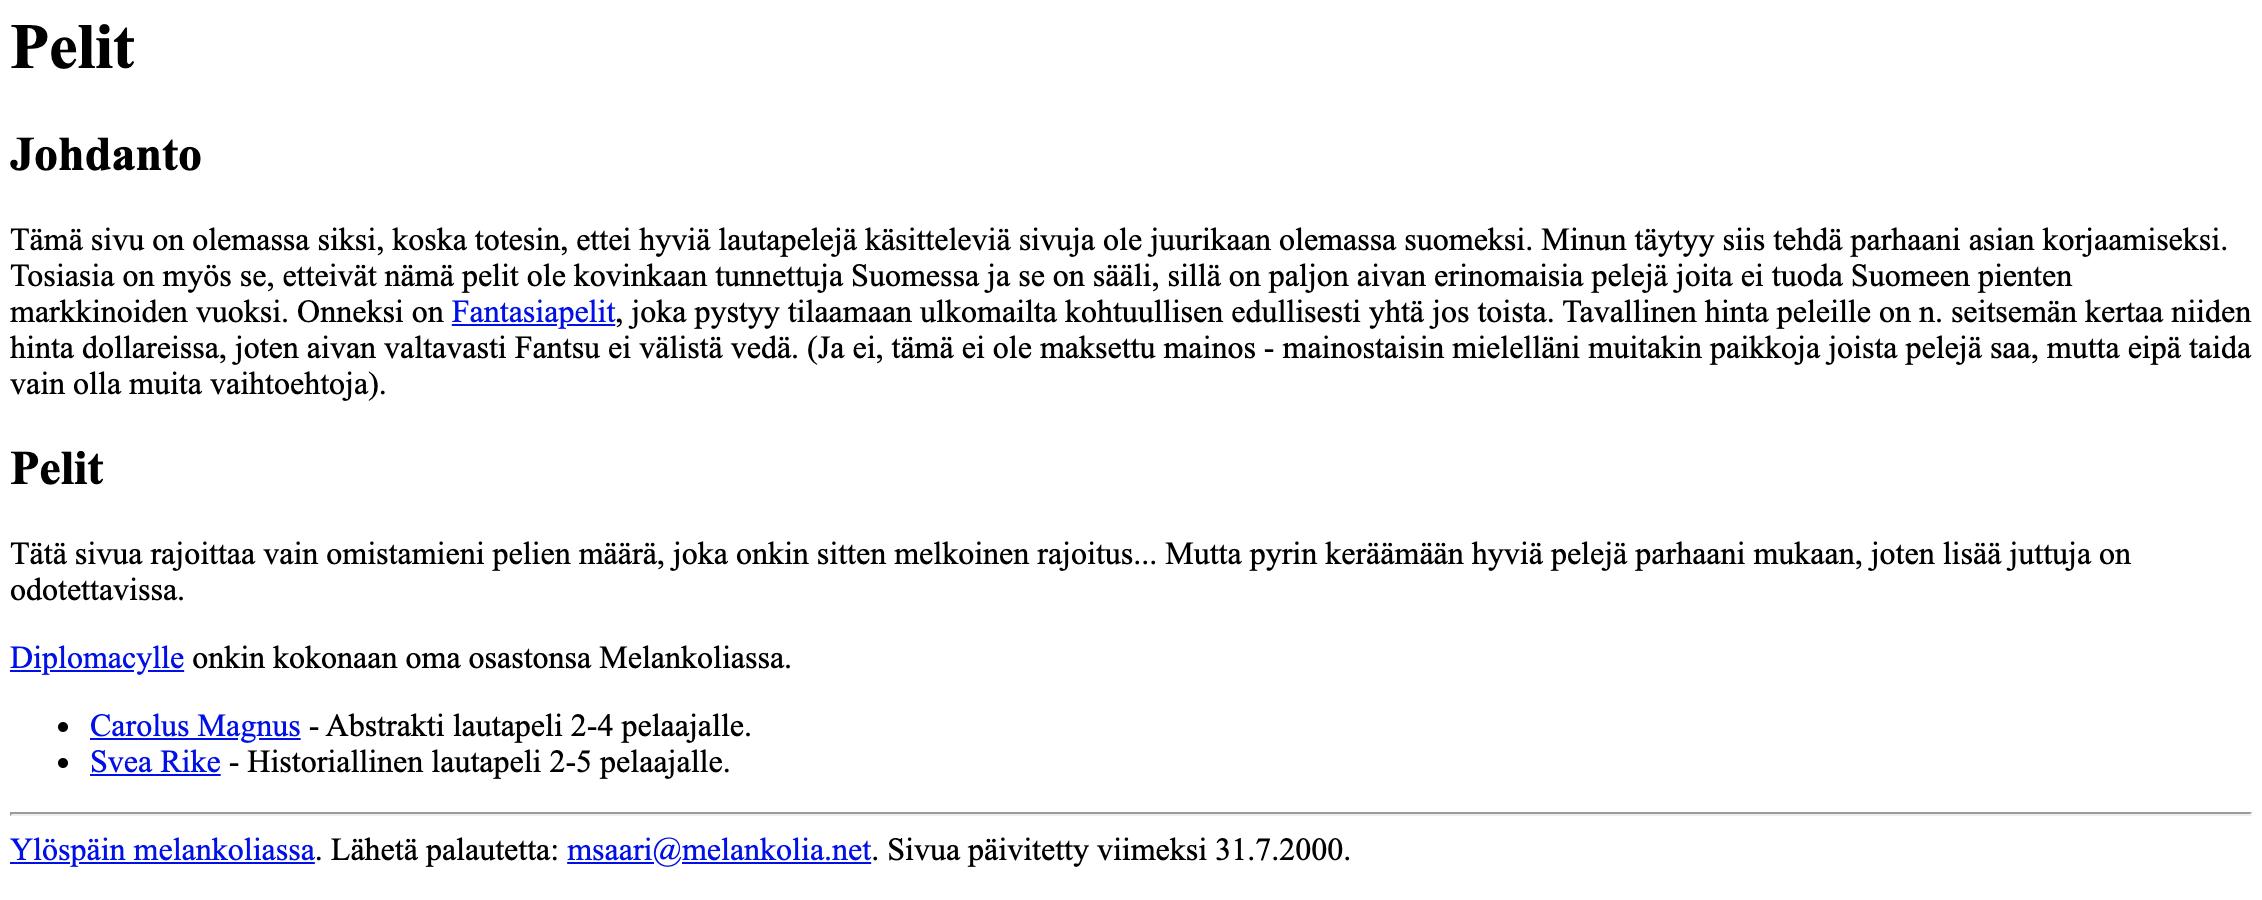 Ruutukaappaus Melankolia.net/pelit-sivustolta heinäkuulta 2000.